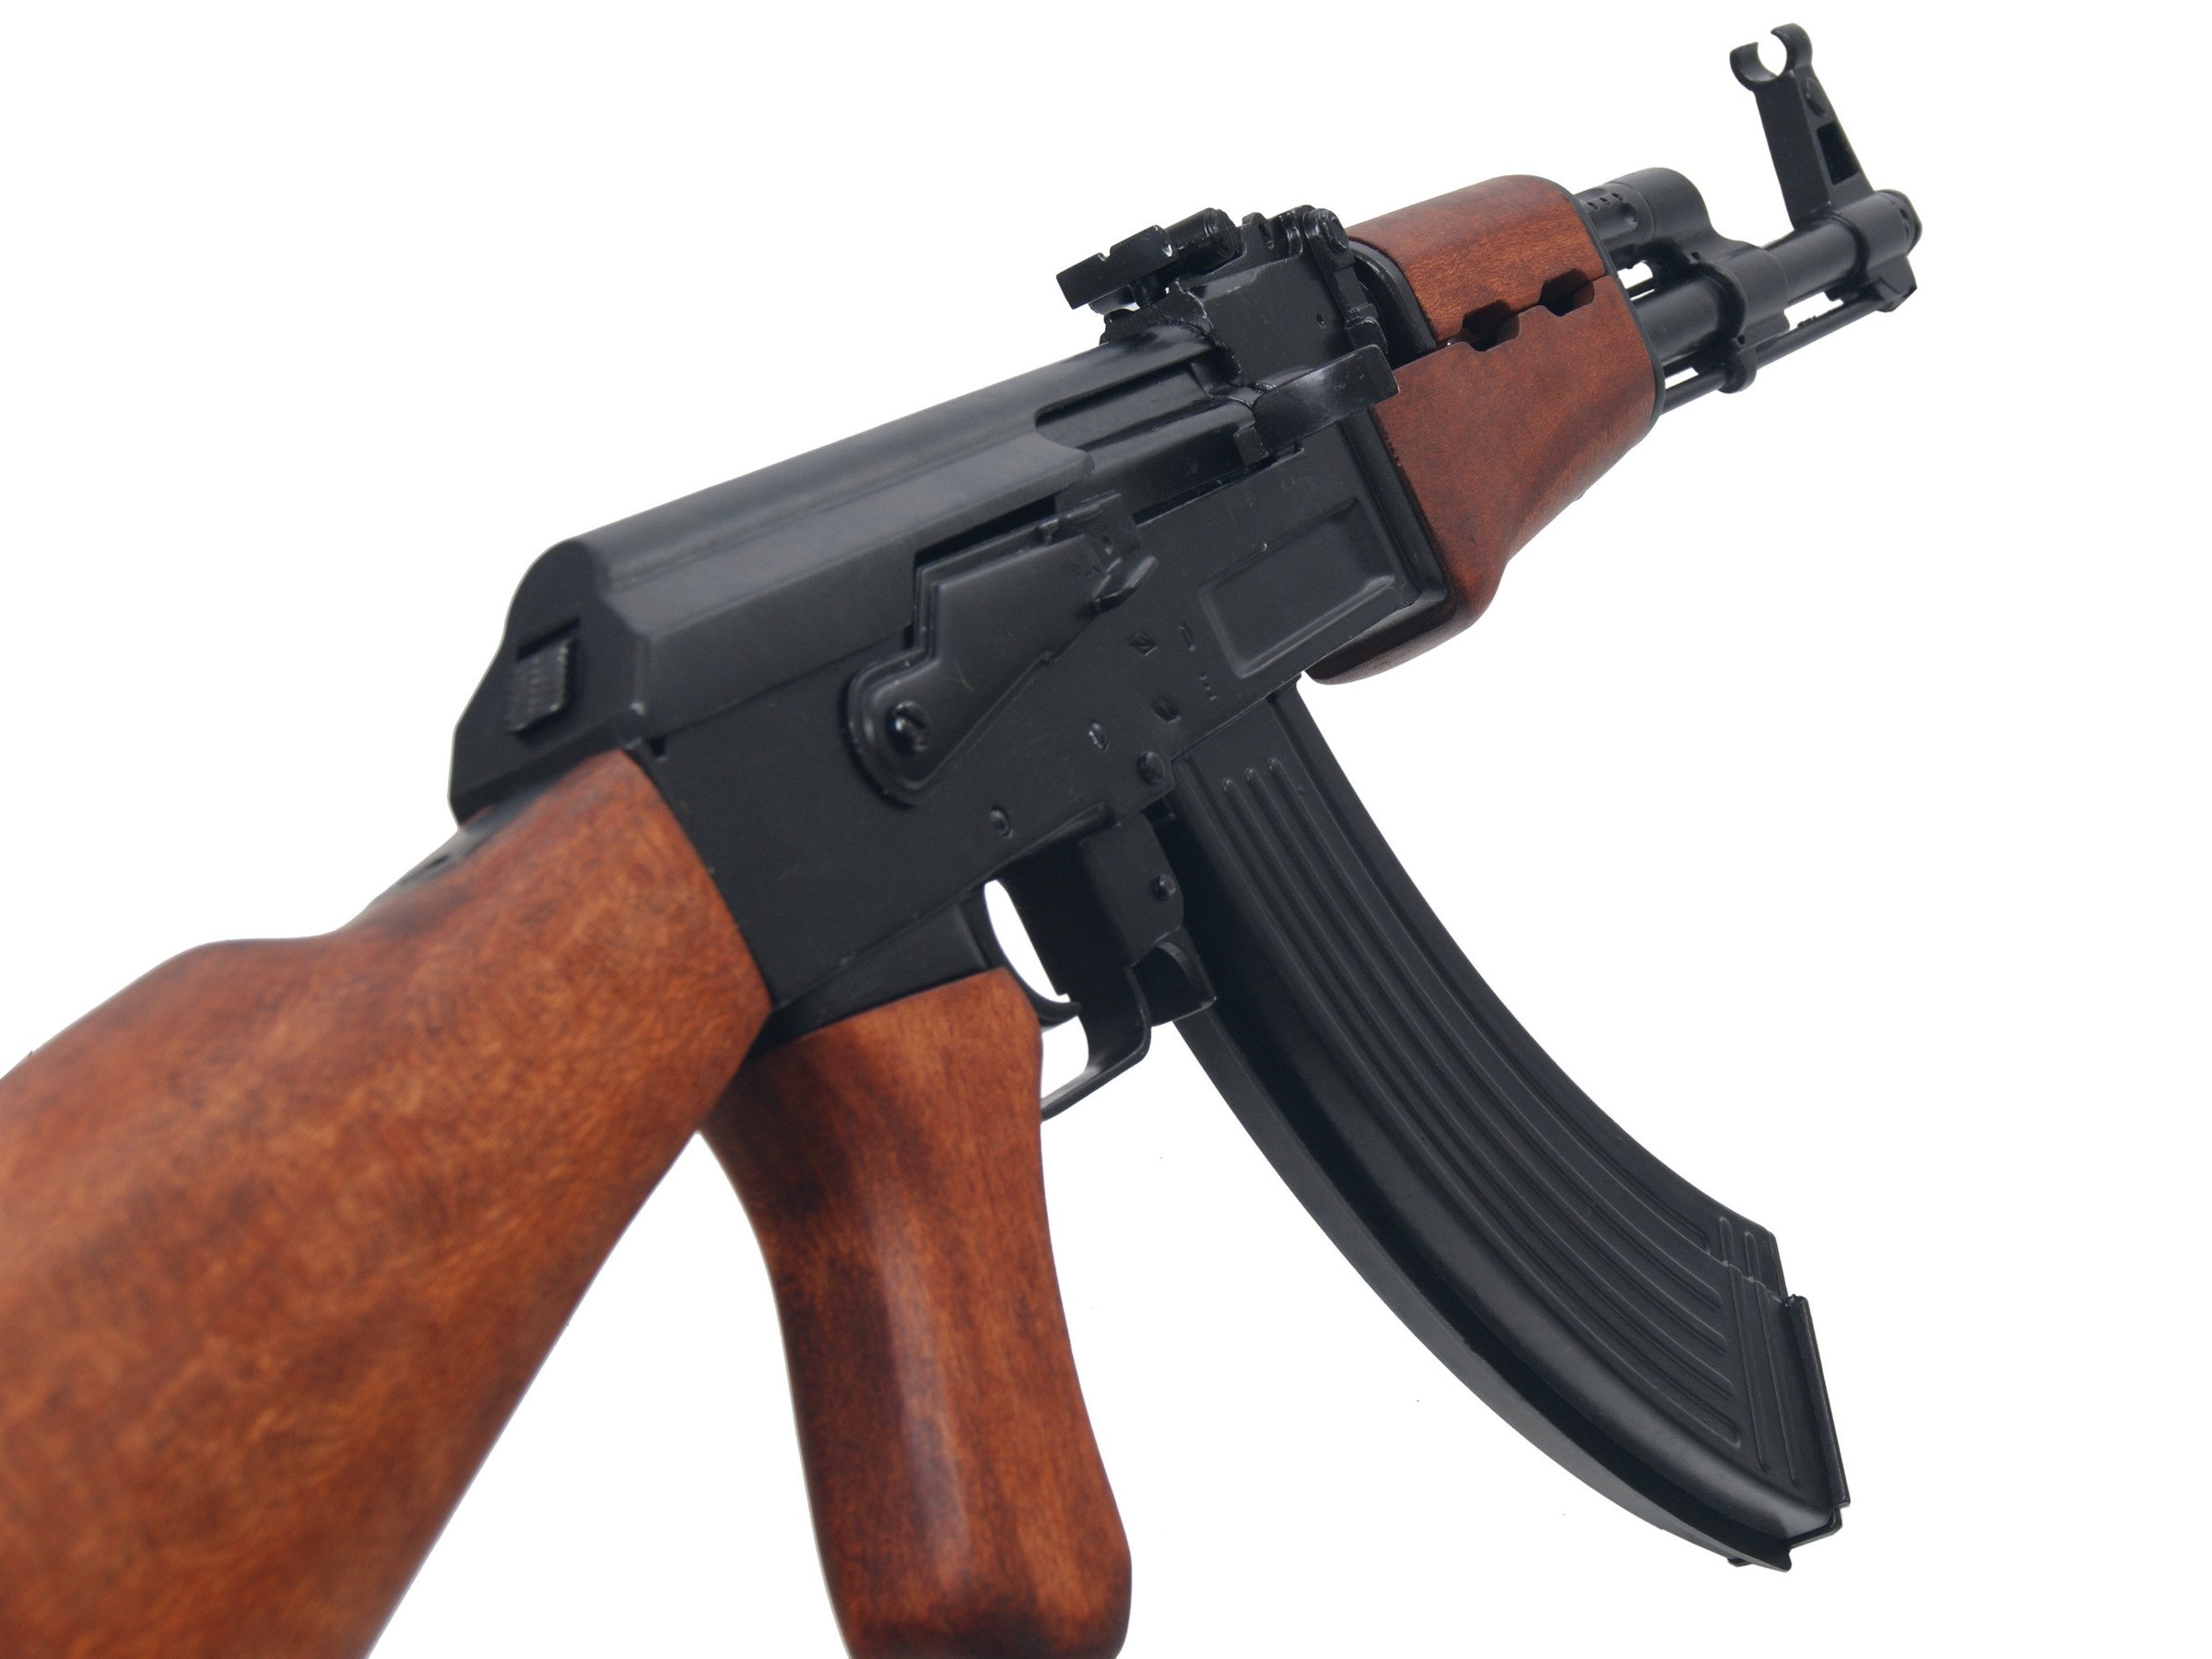 AK-47 assault rifle - wooden stock - model gun.